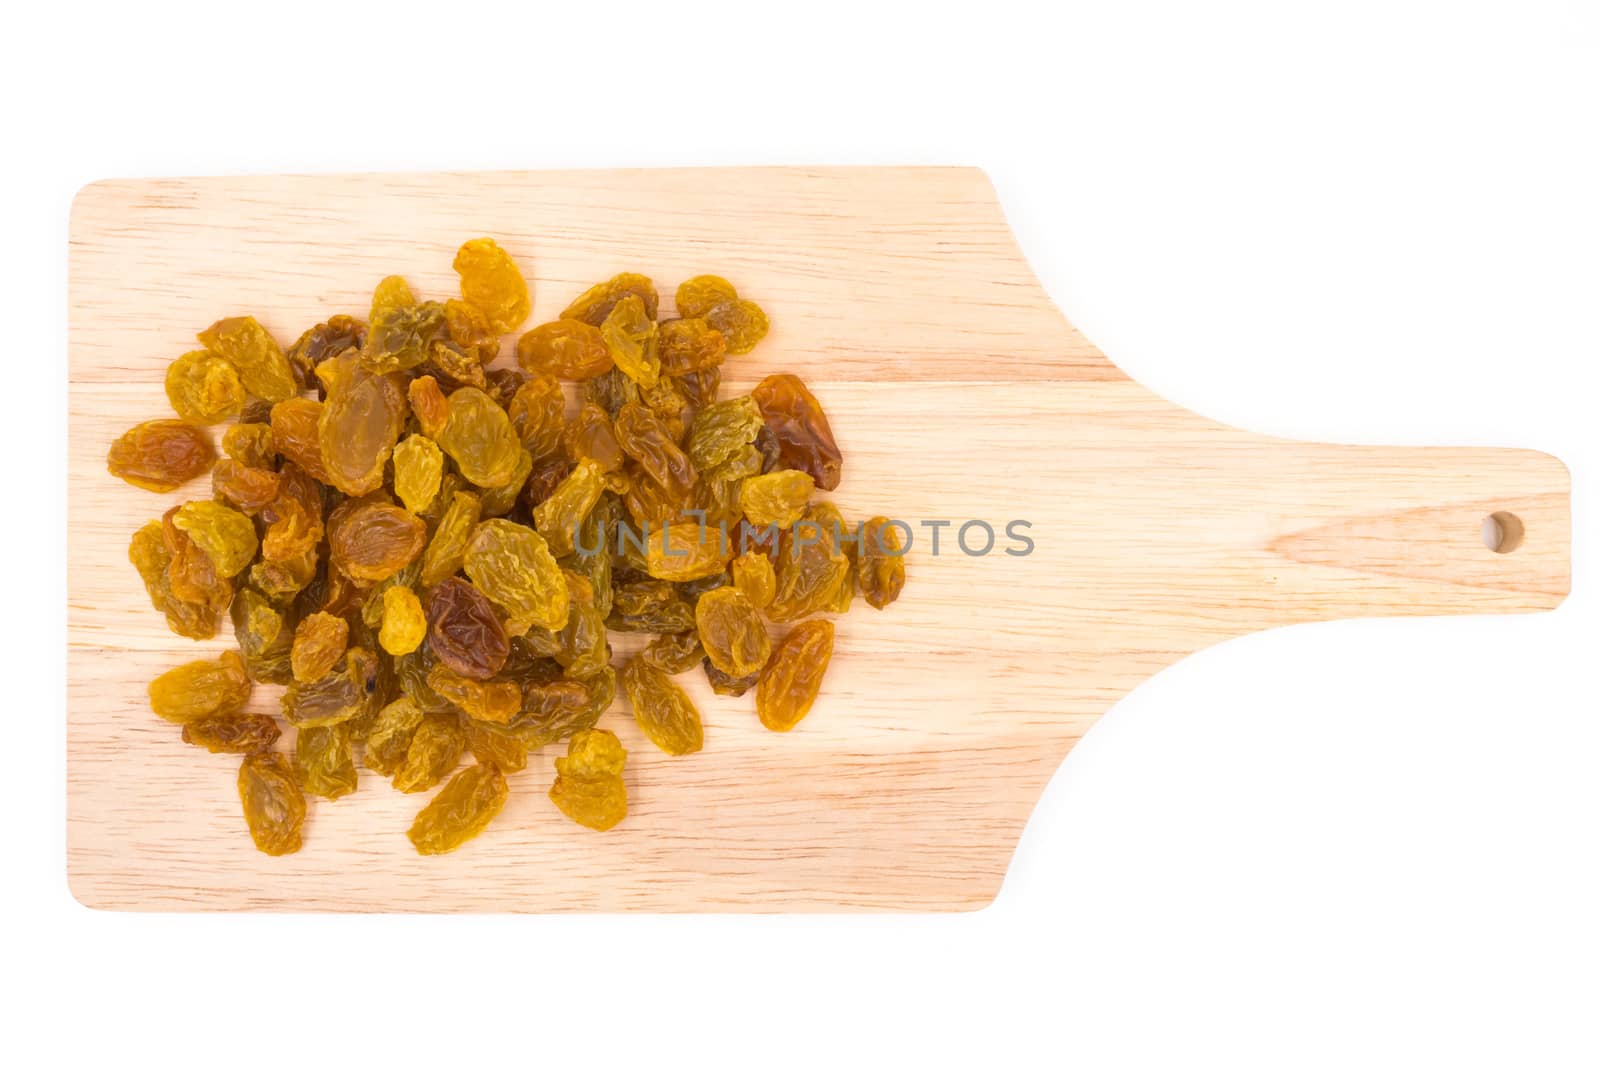 Yellow raisins on wooden tray.